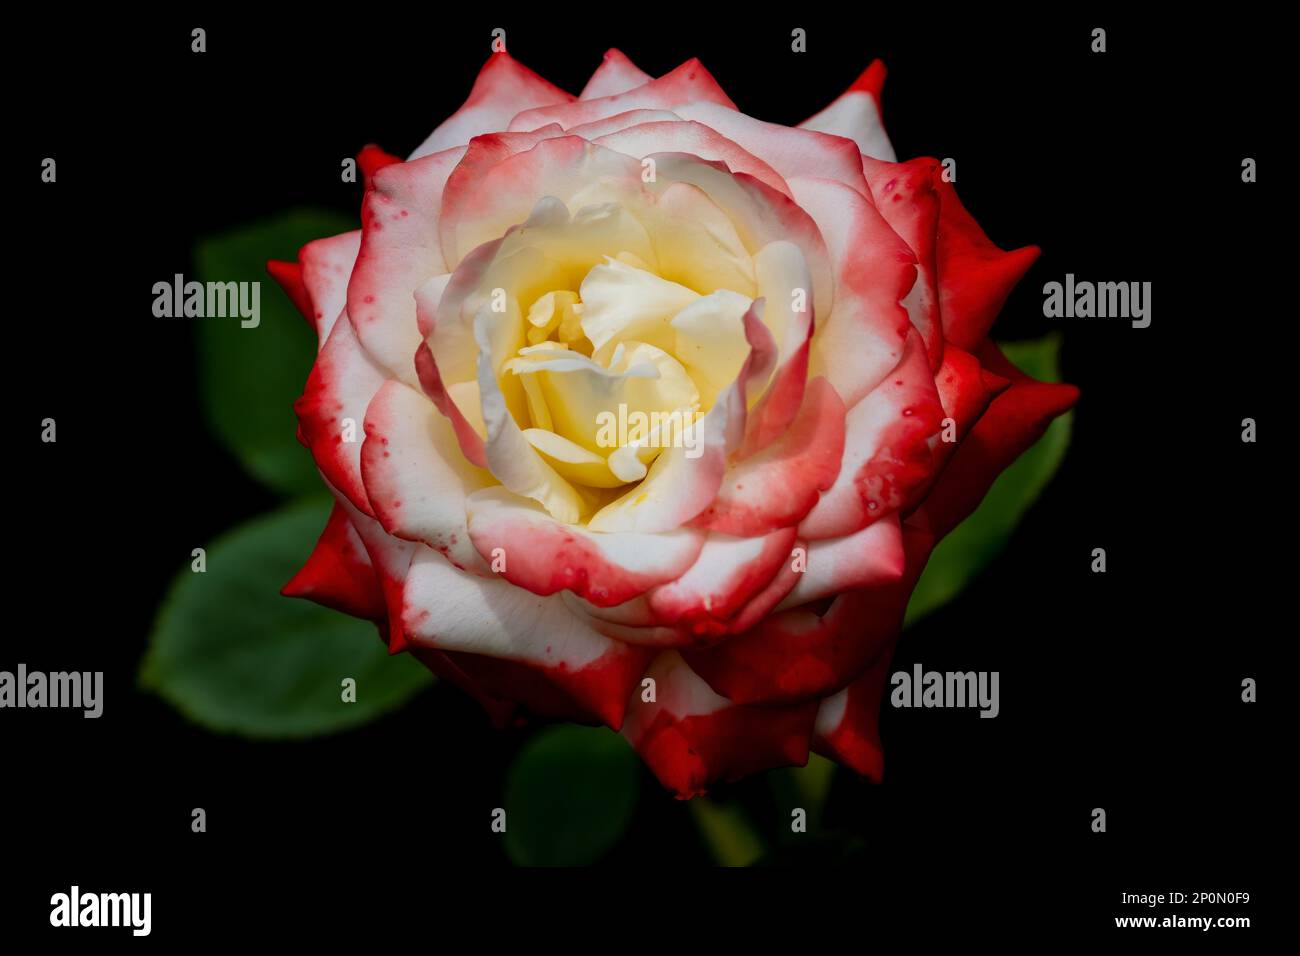 Magnifique rose rouge sur fond sombre. Symbole de l'amour et de la passion. Fleur de jardin populaire Banque D'Images